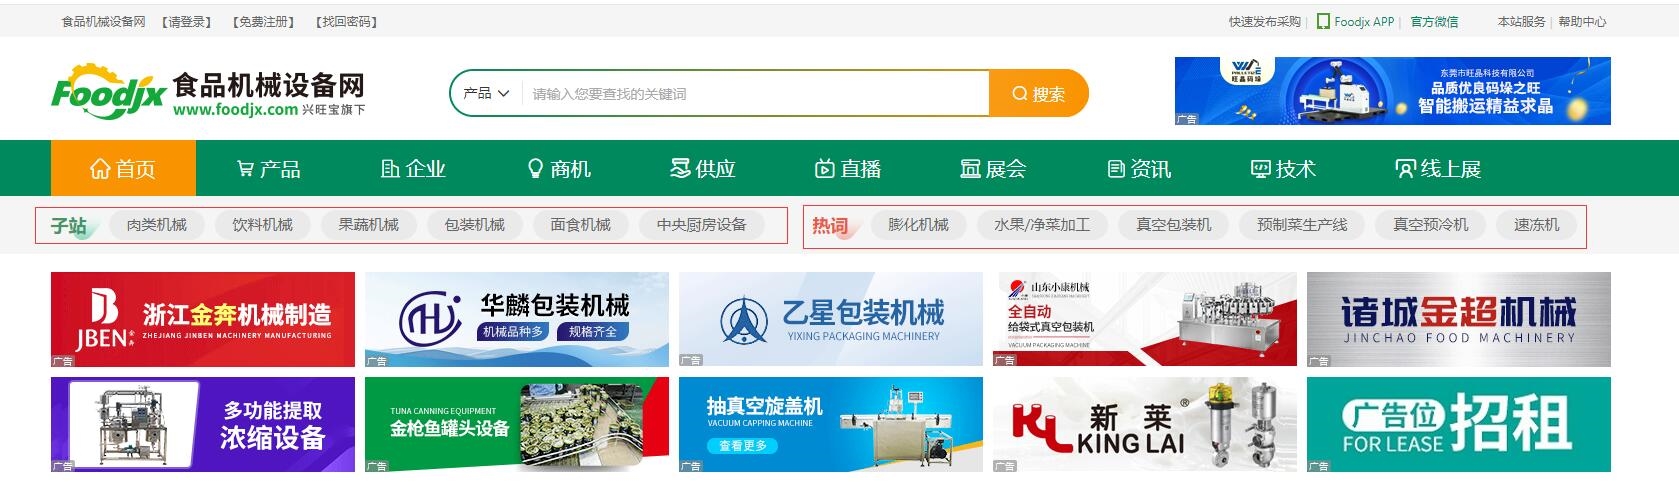 lol比赛押注平台(中国)官方网站食品机械设备网新版首页正式上线(图1)